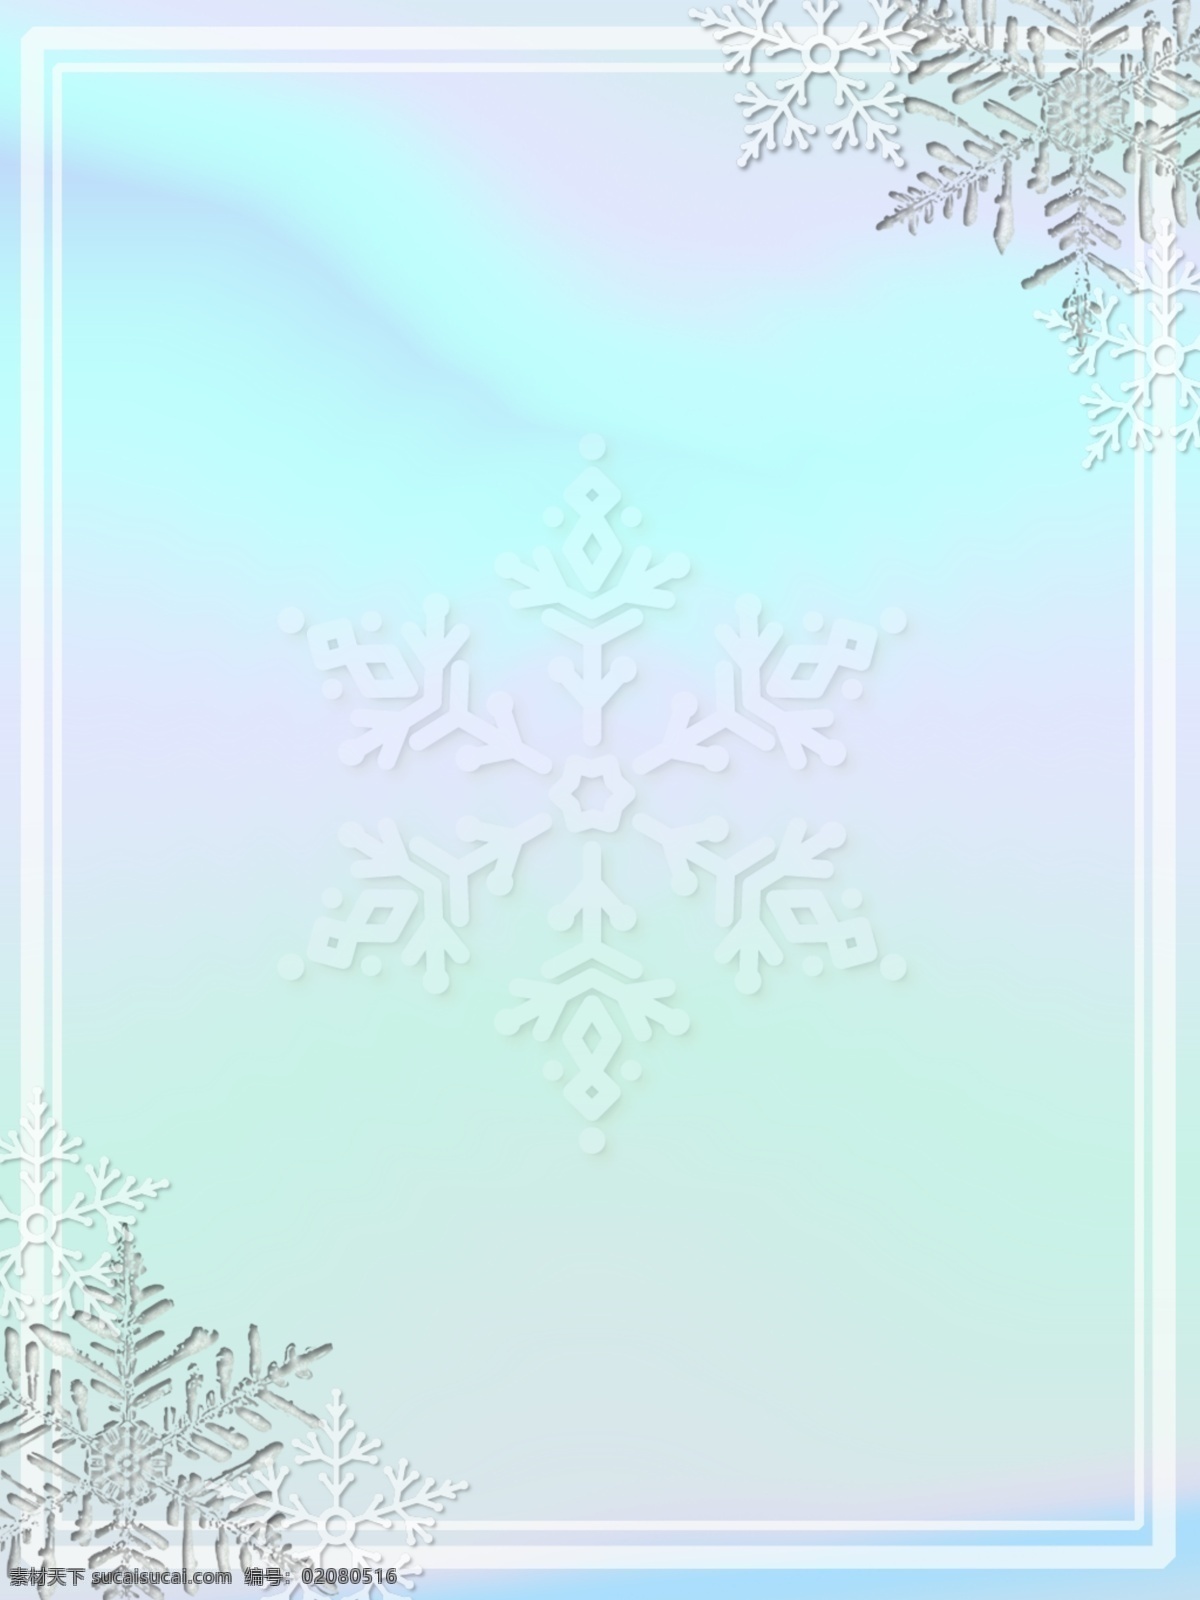 浪漫 蓝白 色系 冬季 雪景 海报 背景 浪漫简约风 蓝白色系 冬季雪景 雪花 海报背景素材